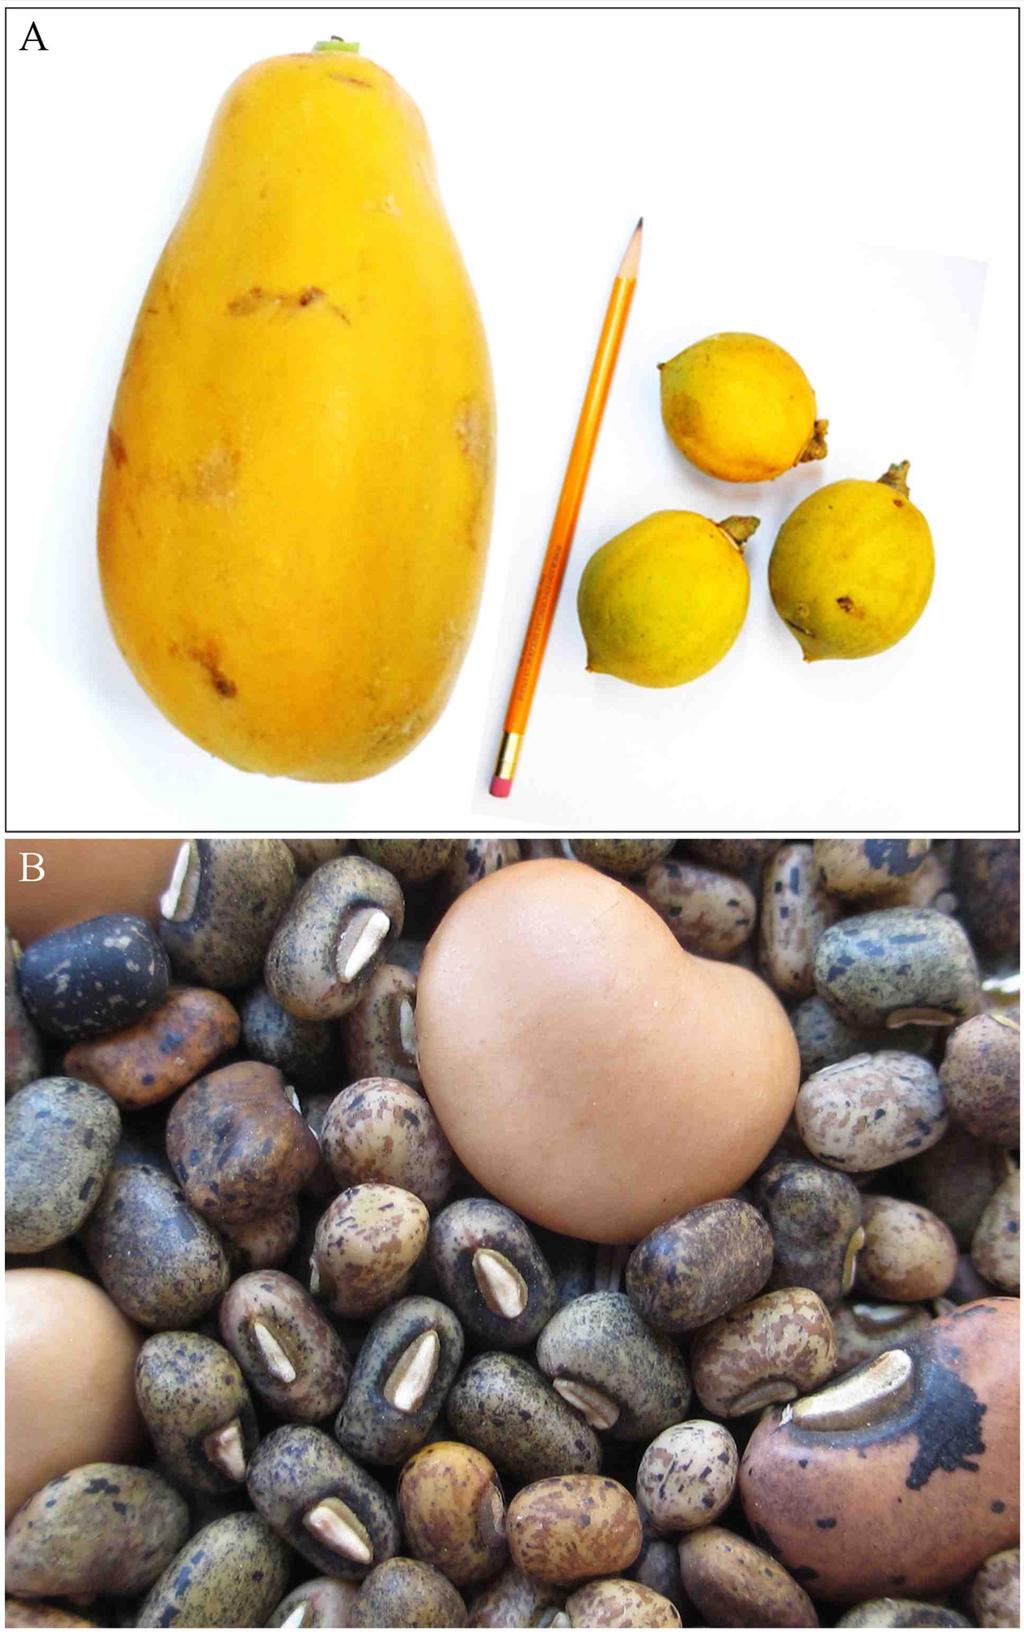 Figura 2. A. Comparación del tamaño entre un fruto de papaya Maradol y frutos de papaya silvestre. B. Frijoles silvestres (pequeños) y domesticados (grandes) de la especie Vigna unguiculata (L.) Walp.